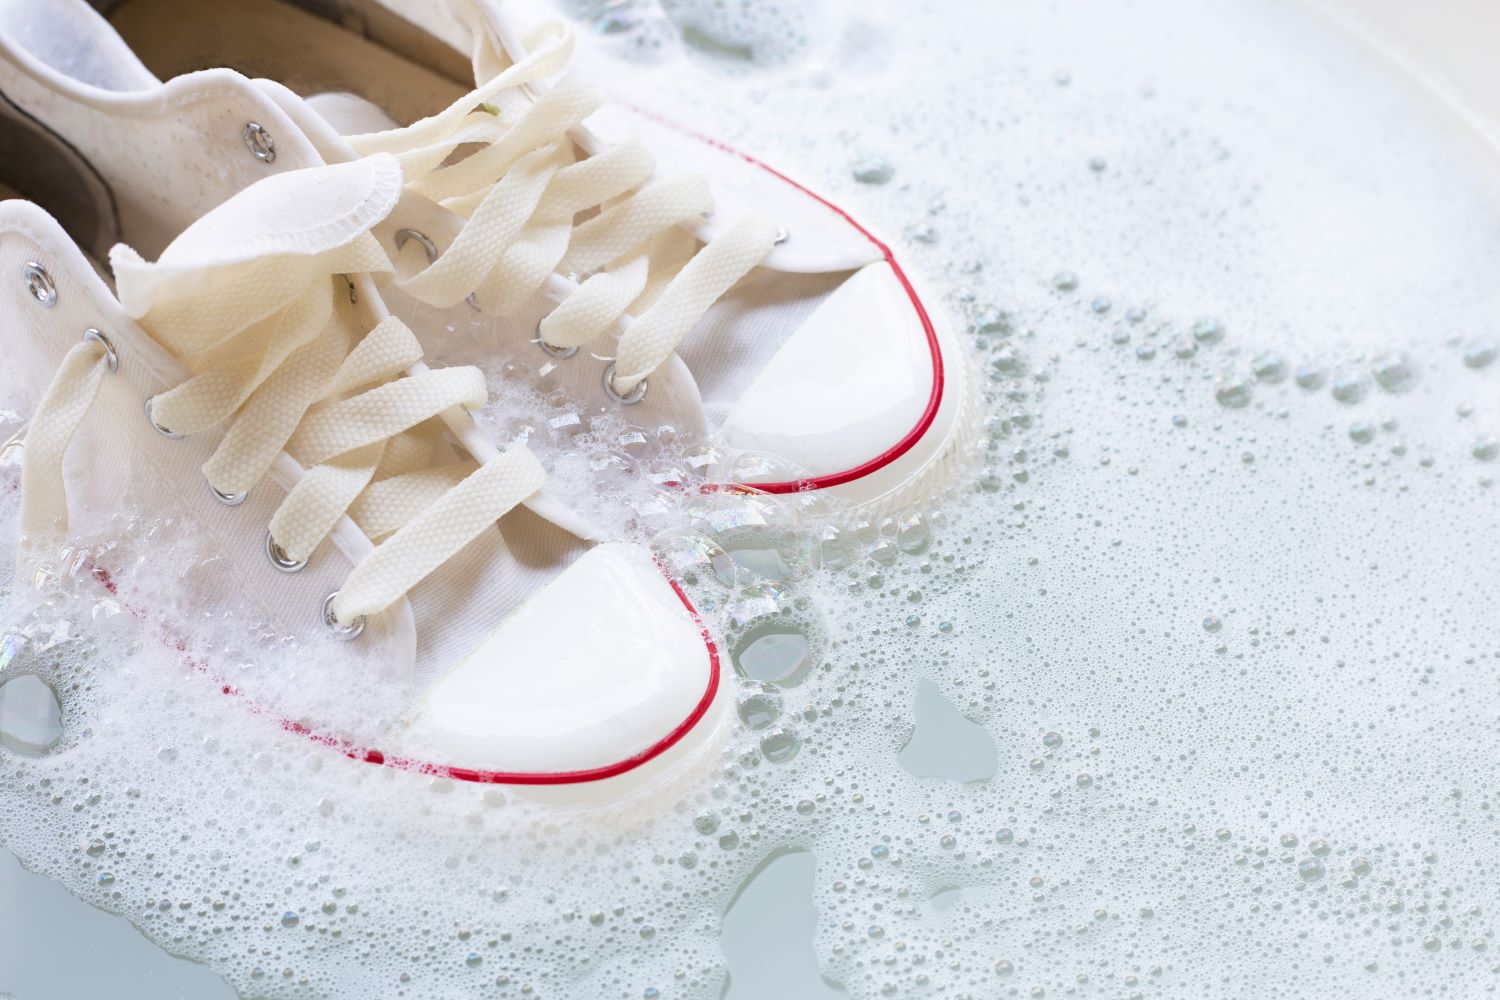 วิธีการดูแลทำความสะอาดรองเท้าผู้หญิง